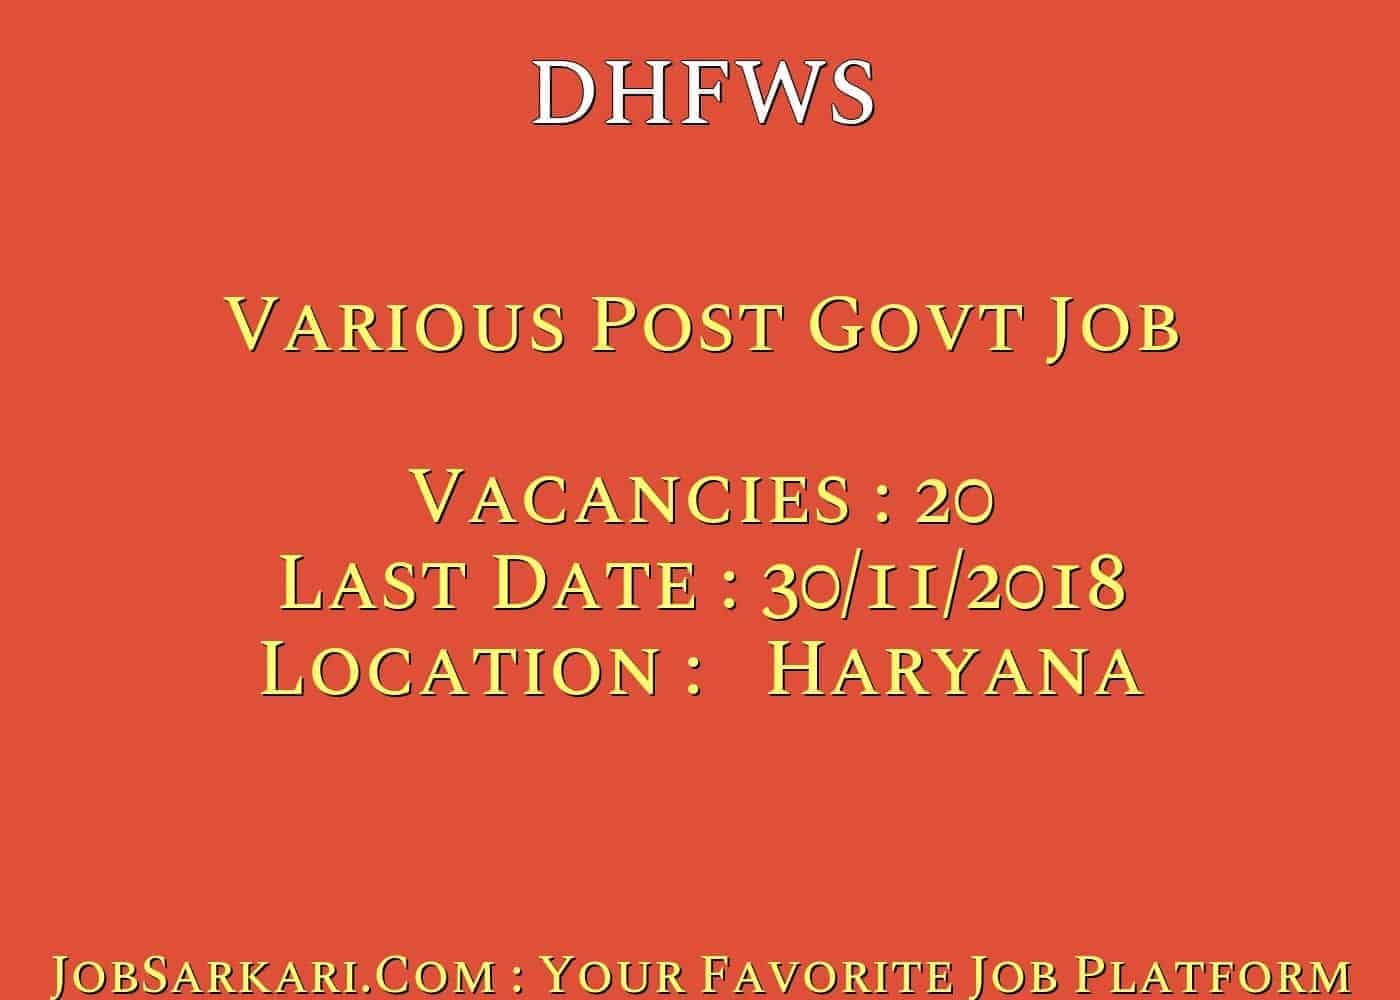 DHFWS Recruitment 2018 For Various Post Govt Job